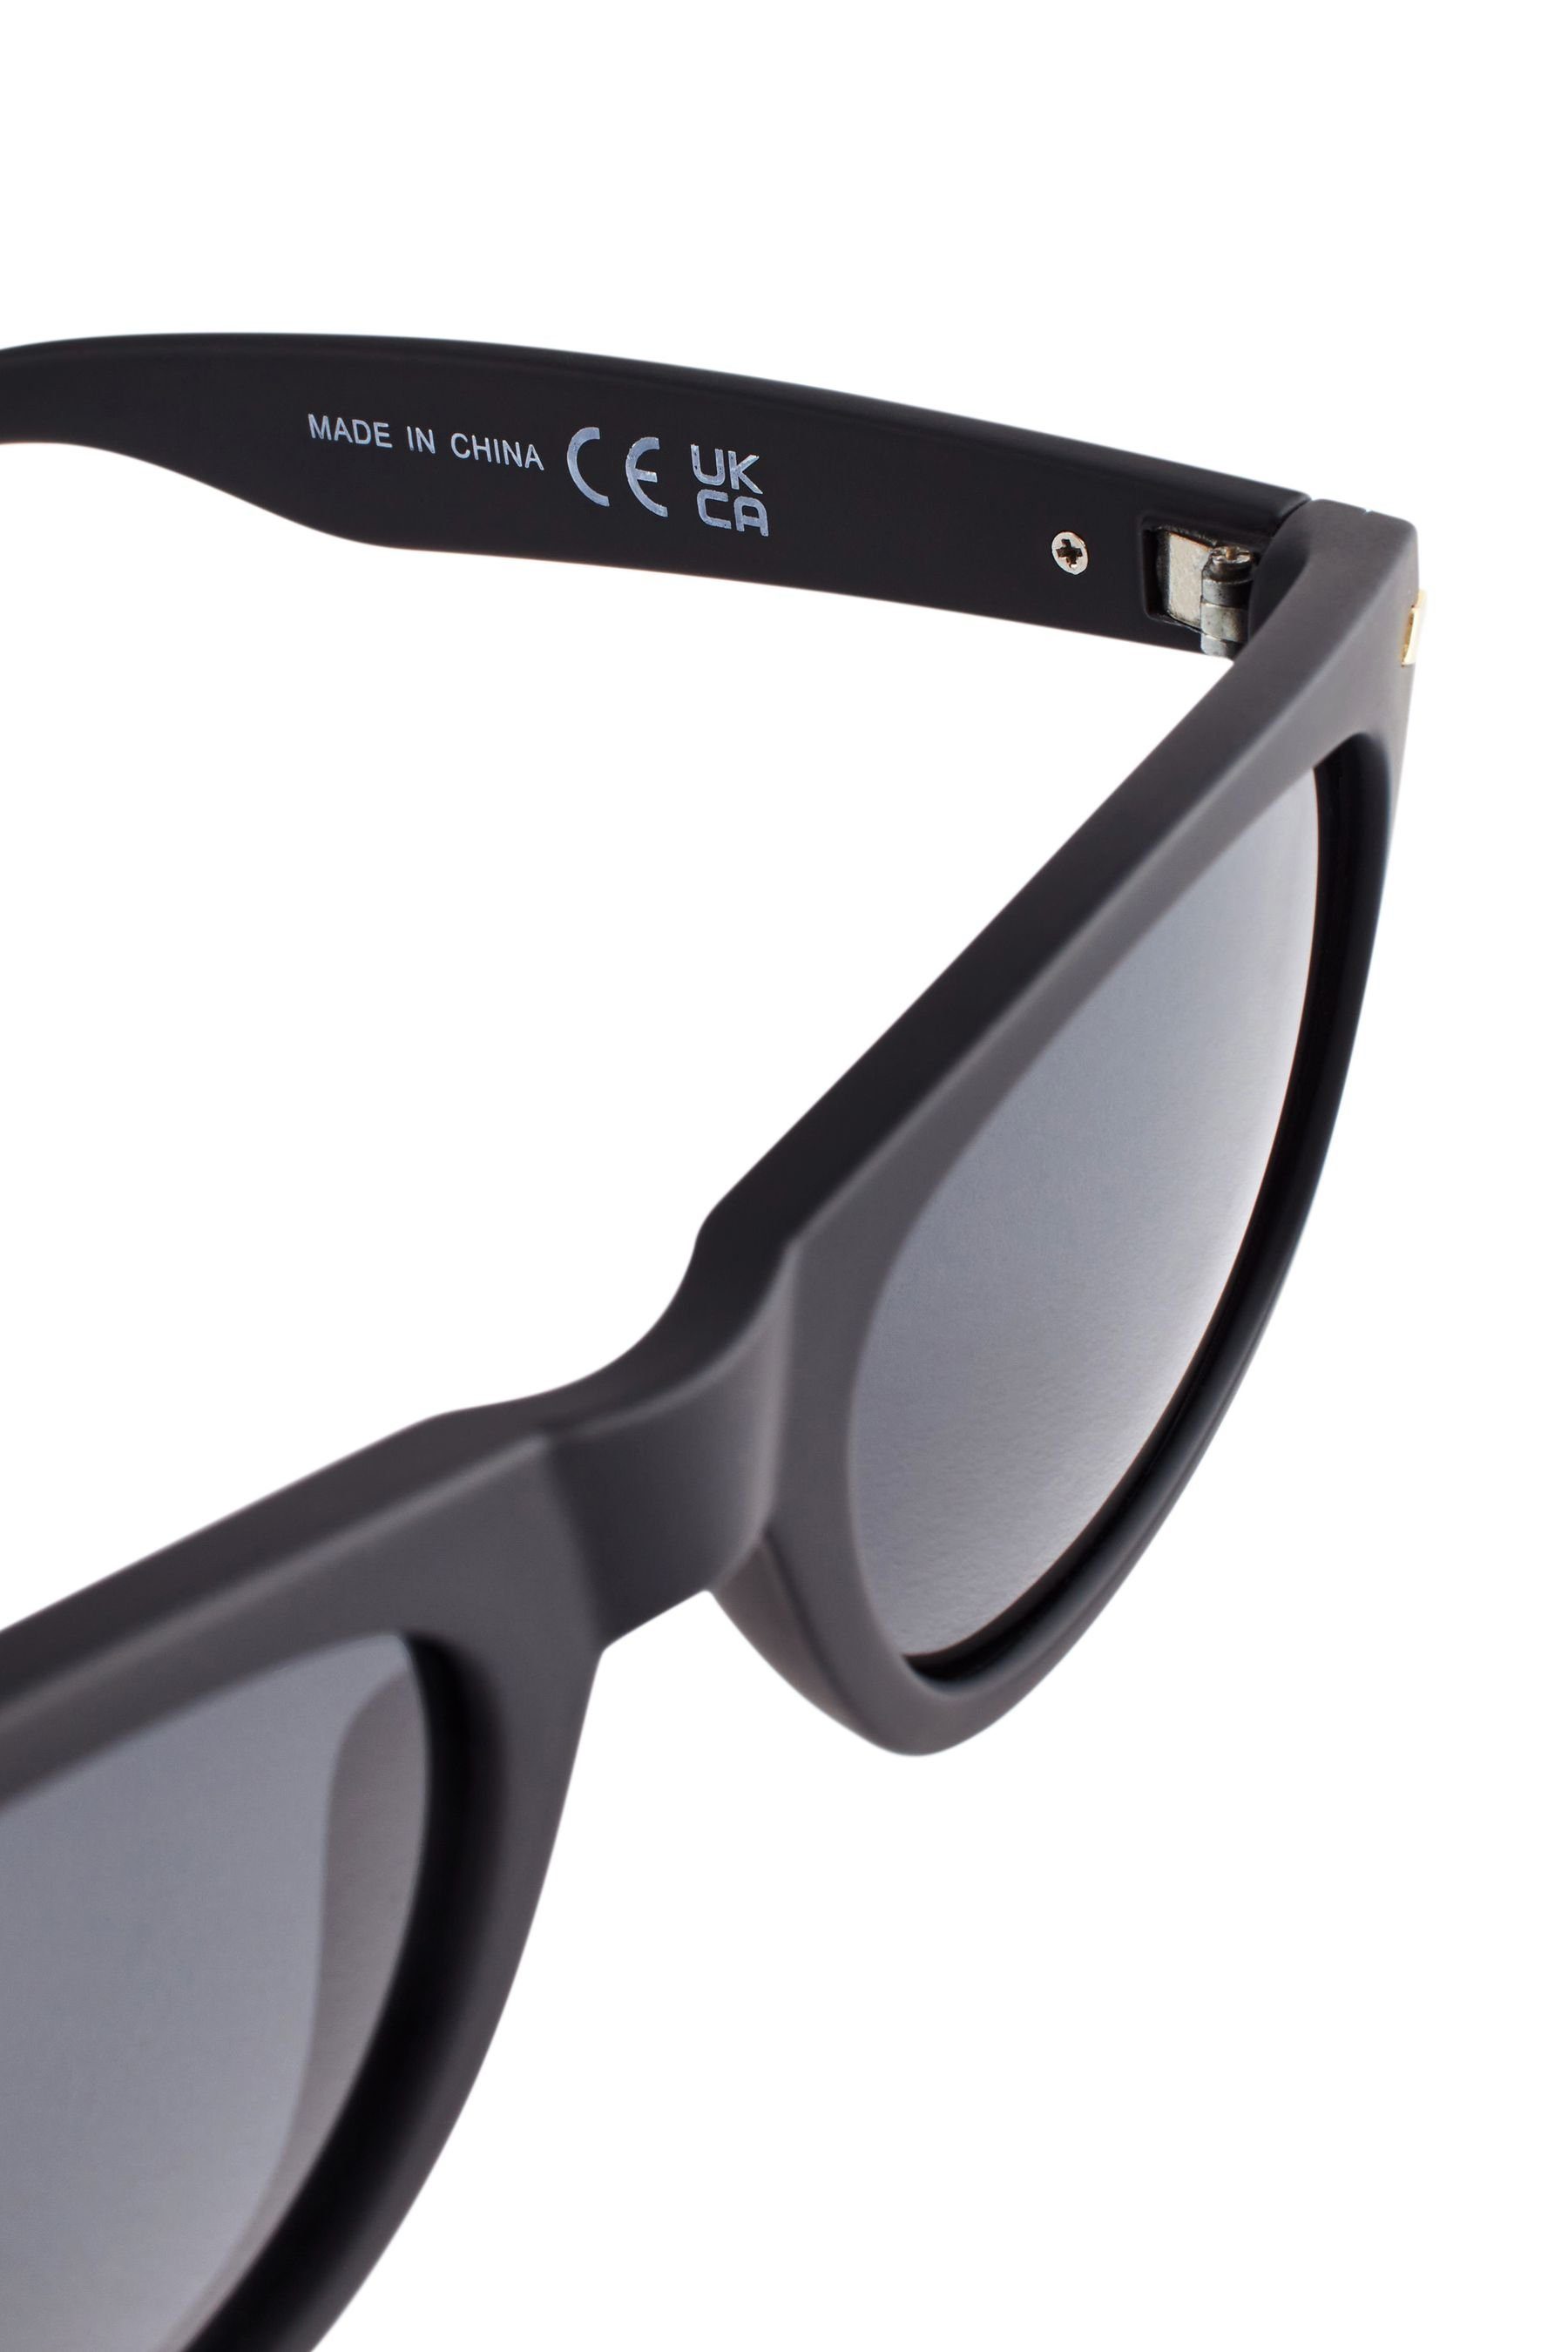 mit Gläsern Eckige Sonnenbrille Next polarisierten (1-St) Pilotenbrille